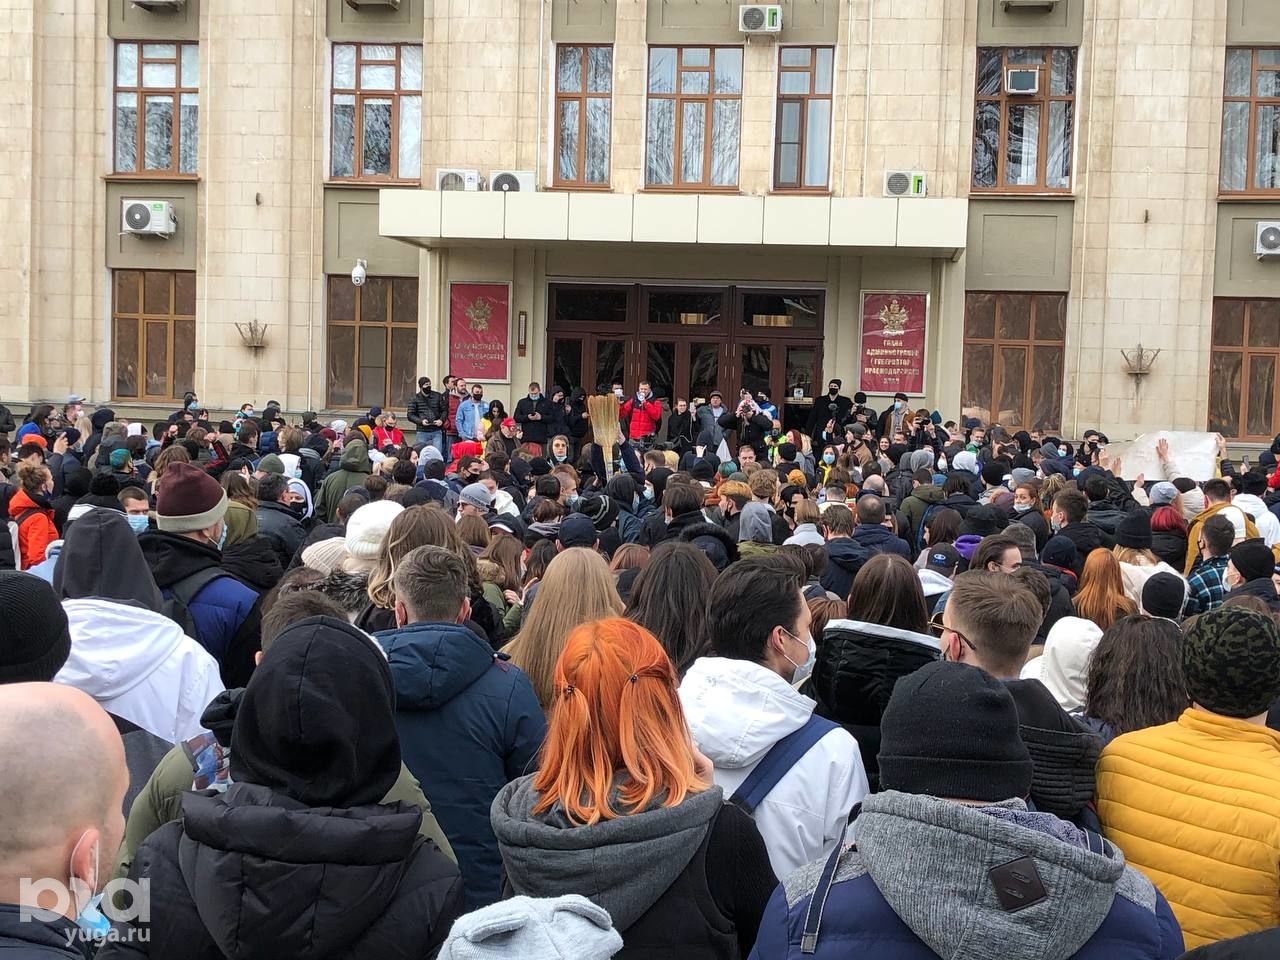 Ситуация в россии последние новости сегодня. Митинг Навального 2021 Краснодар. Митинг в Краснодаре 23 января. Январь 2021 Навальный митинг в Краснодаре. Митинг в Краснодаре.